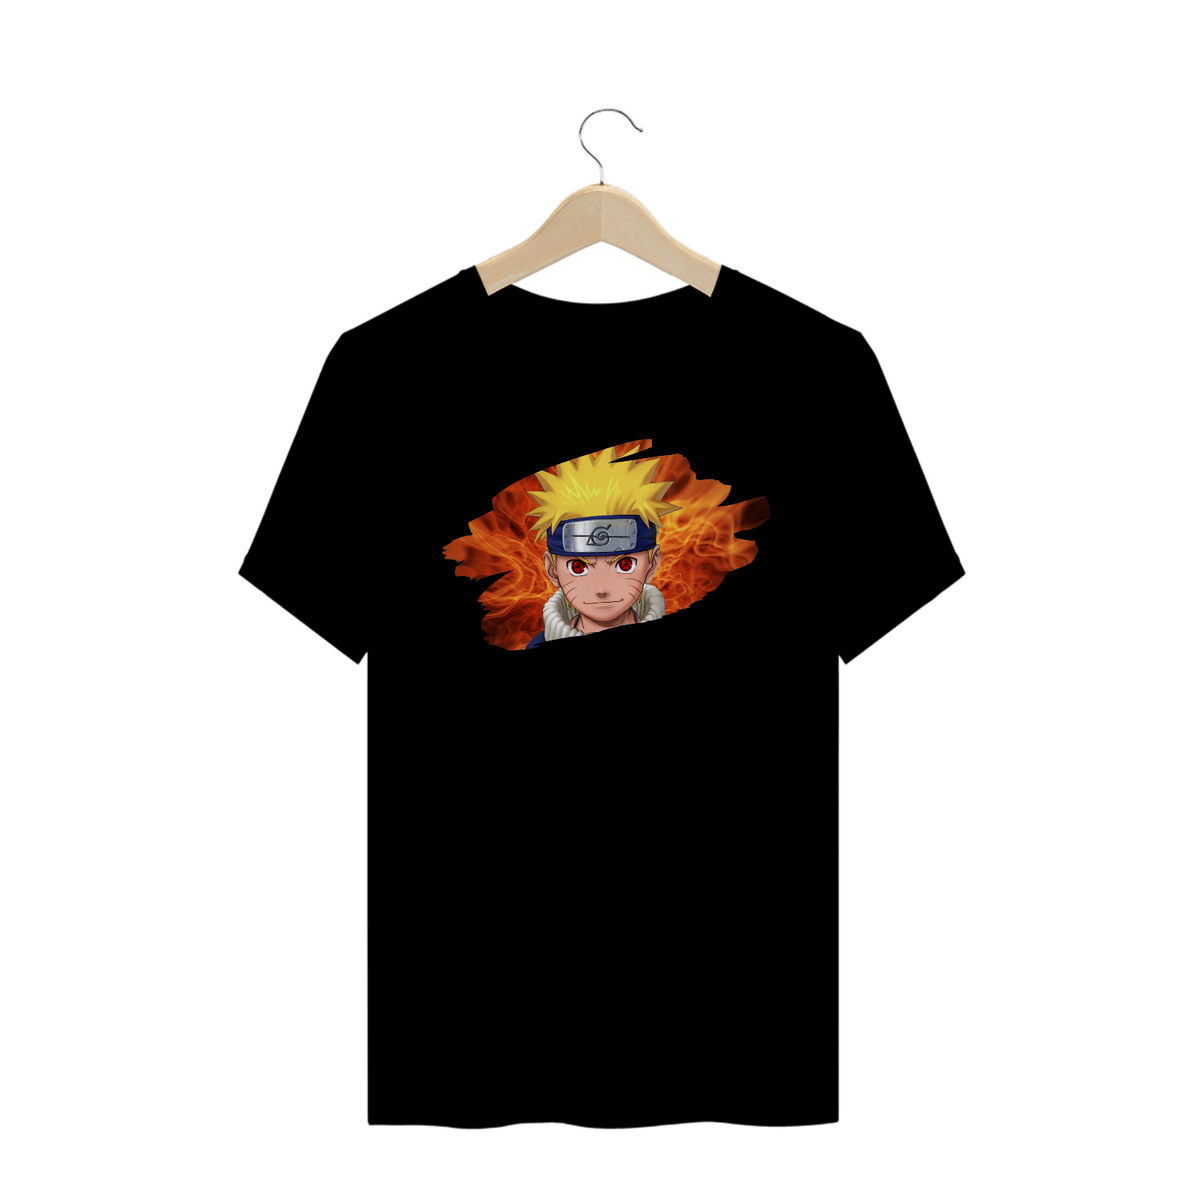 Nome do produto: T-Shirt Naruto Uzumaki (NARUTO)